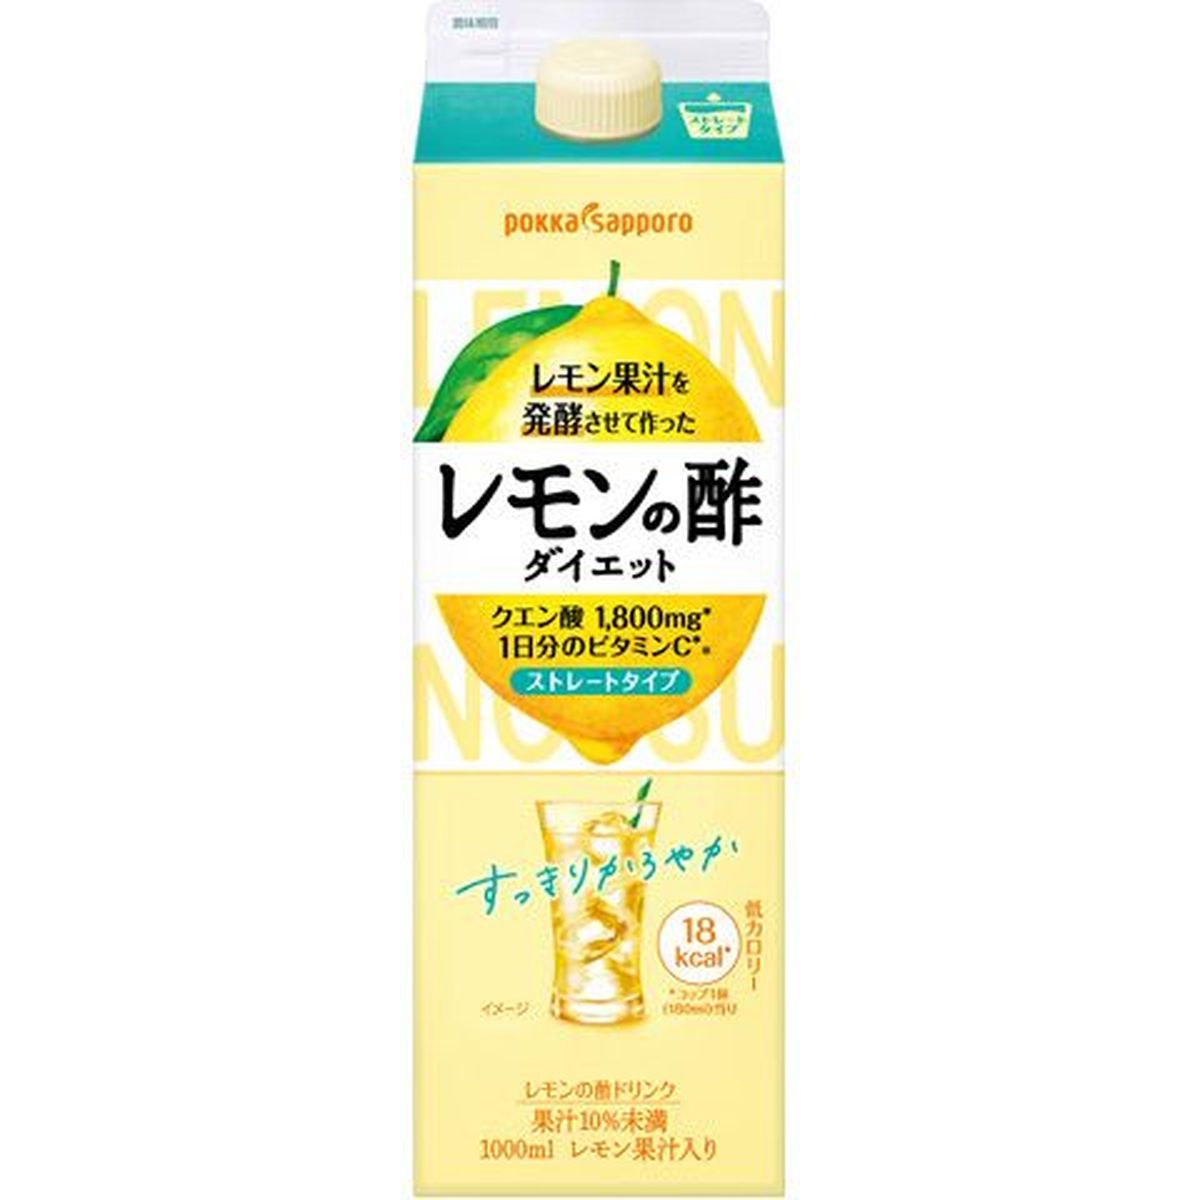 【6個入リ】ポッカサッポロ レモンノ酢 ダイエットストレート紙 1L